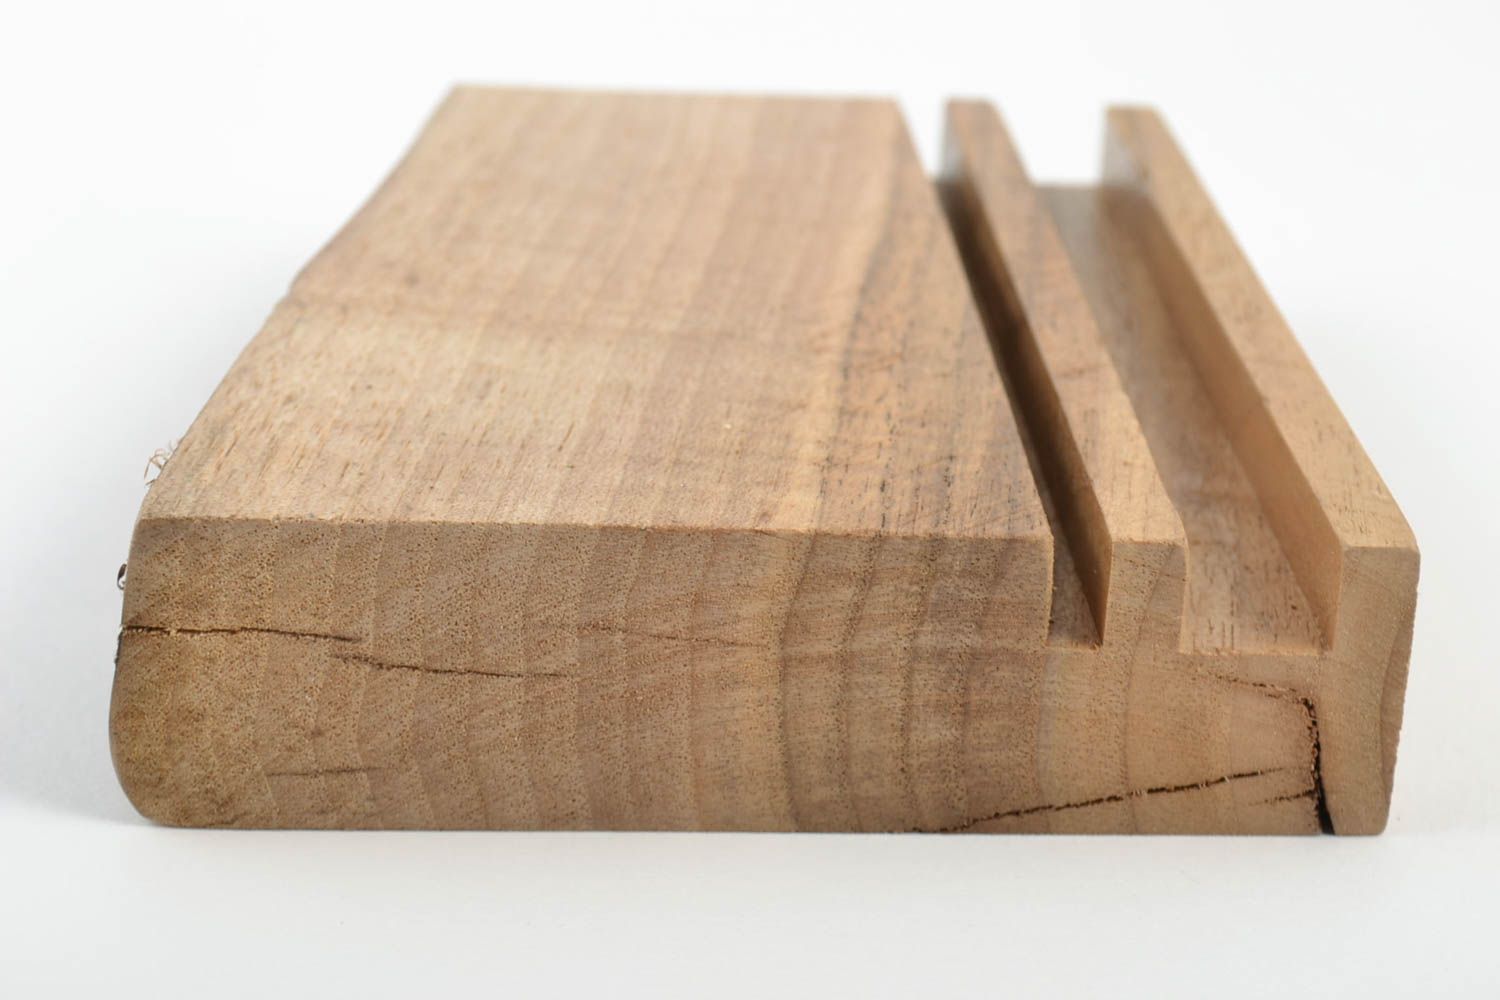 Подставка для планшета из дерева ручной работы для интерьера в эко стиле подарок фото 3